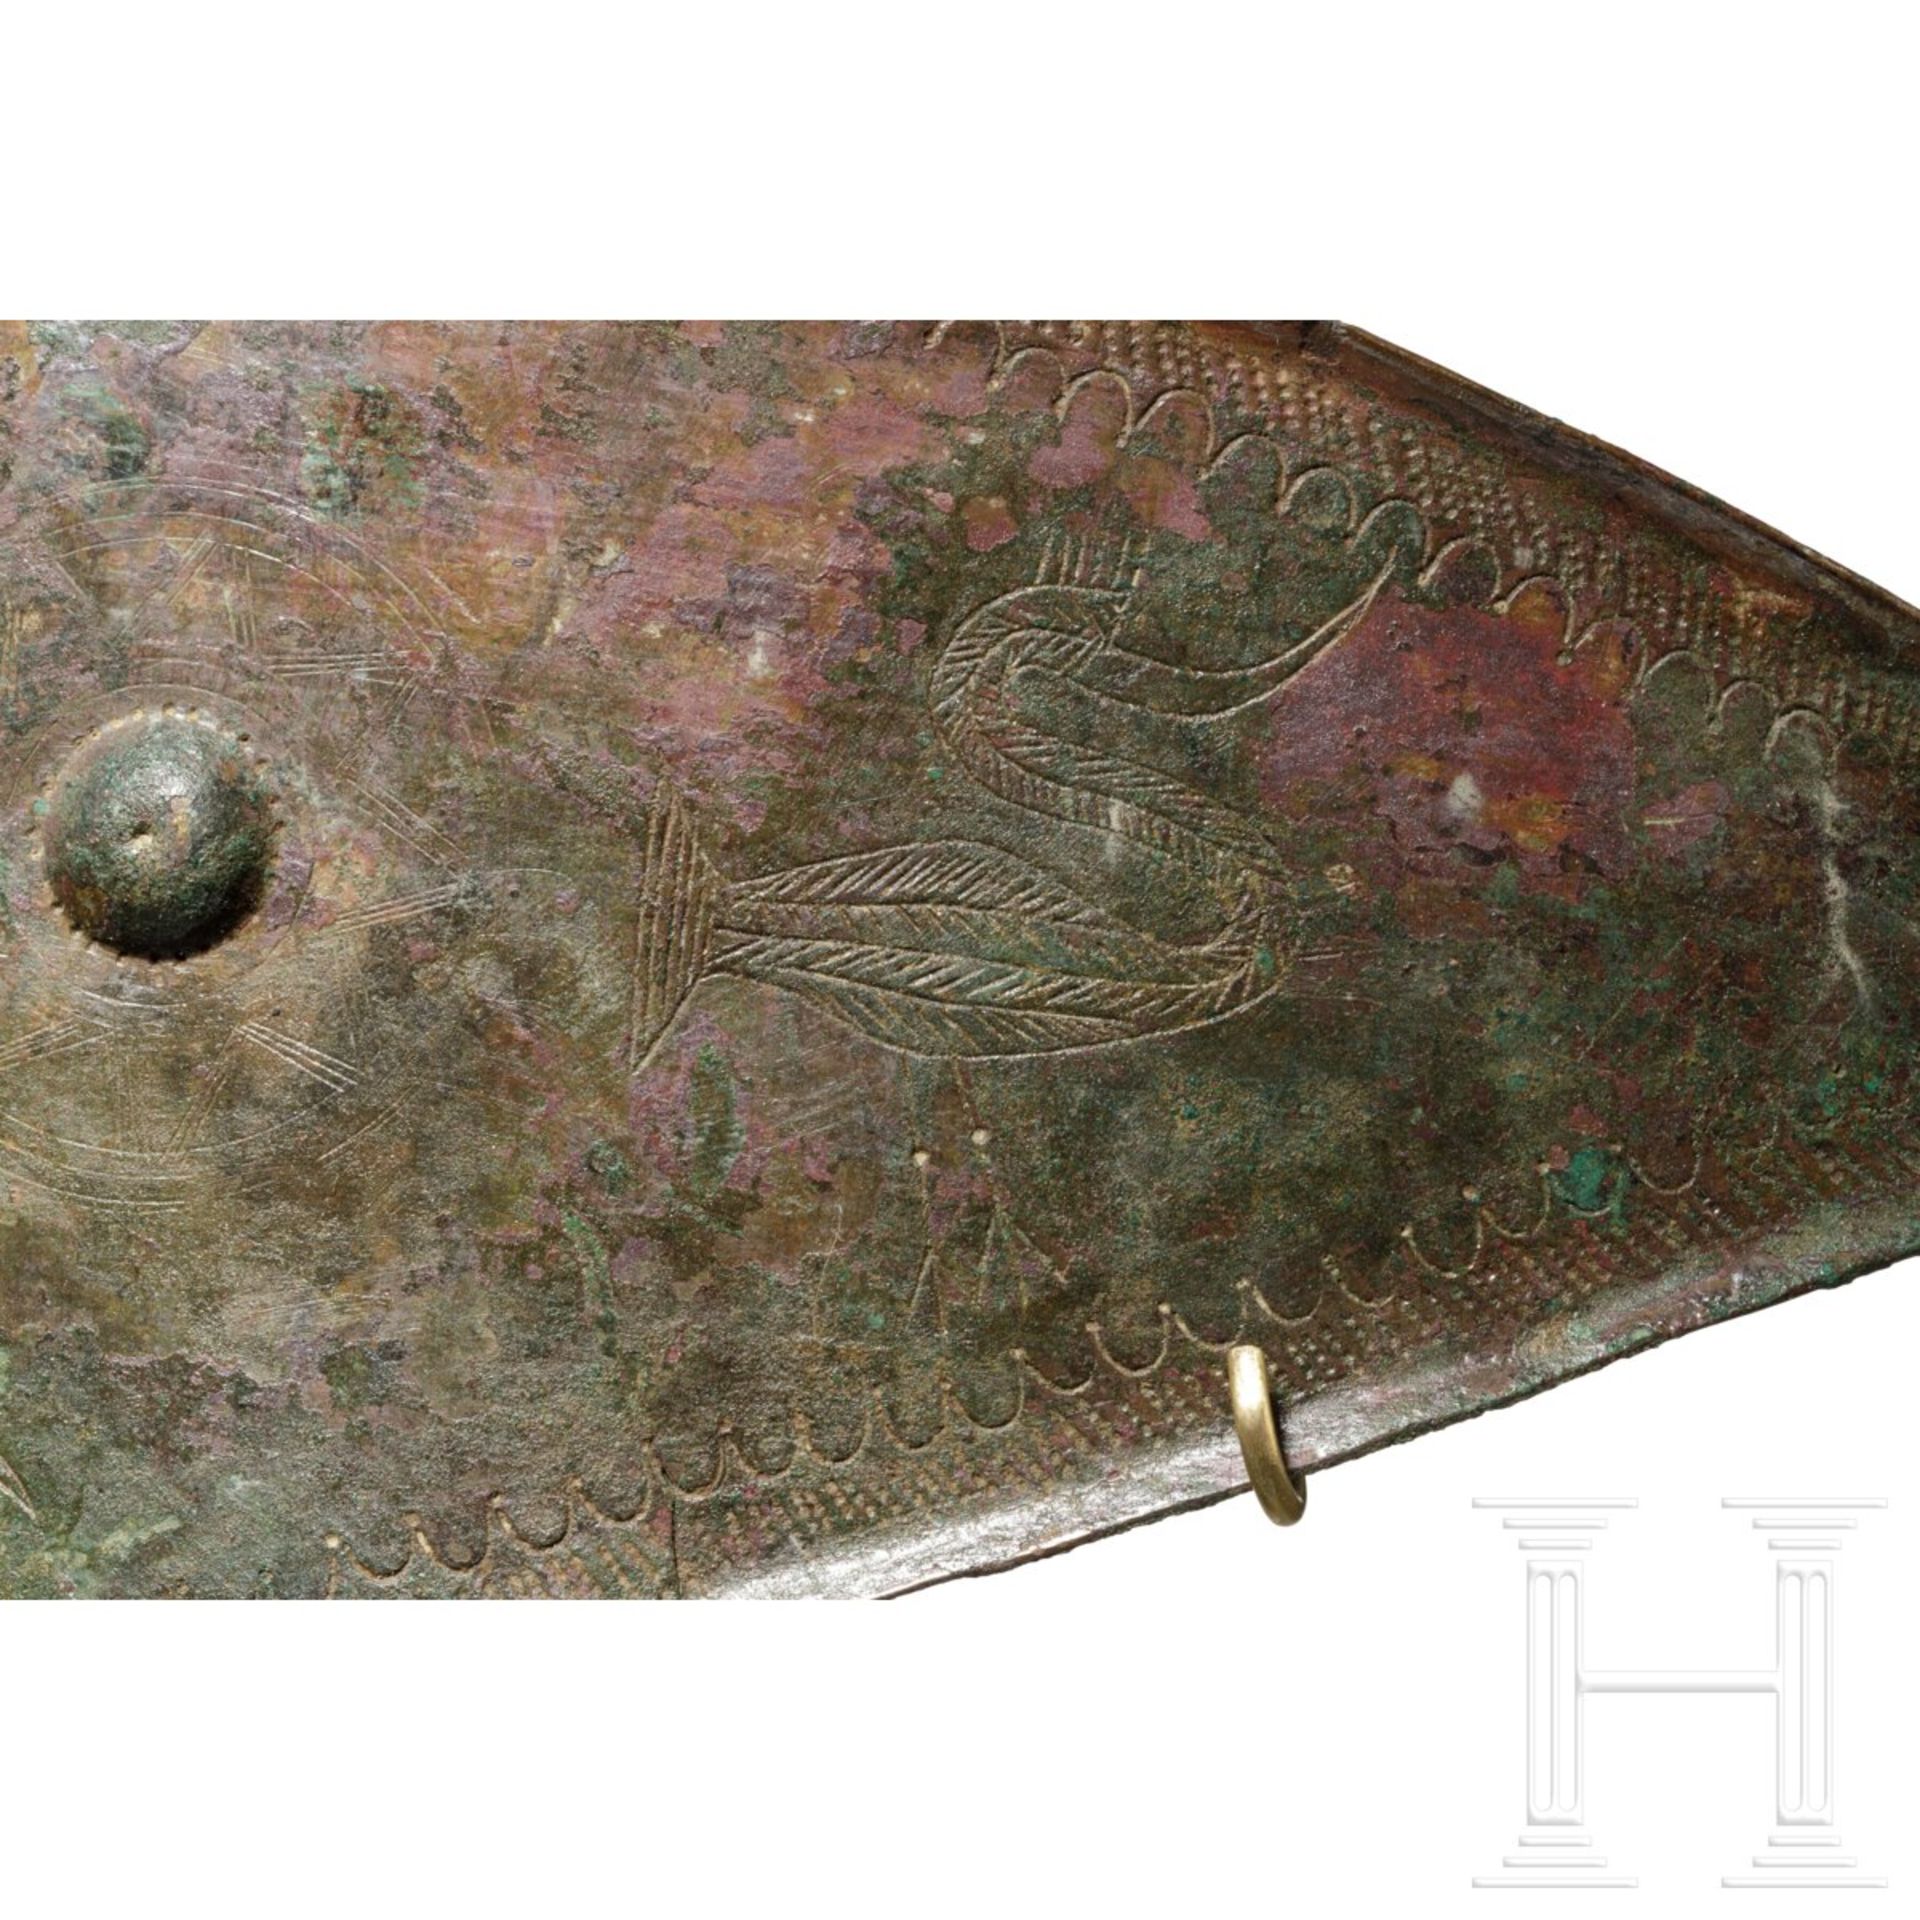 Villanova-Bronze-Gürtel mit Wasservögeln, 800 - 750 v. Chr. - Bild 5 aus 7